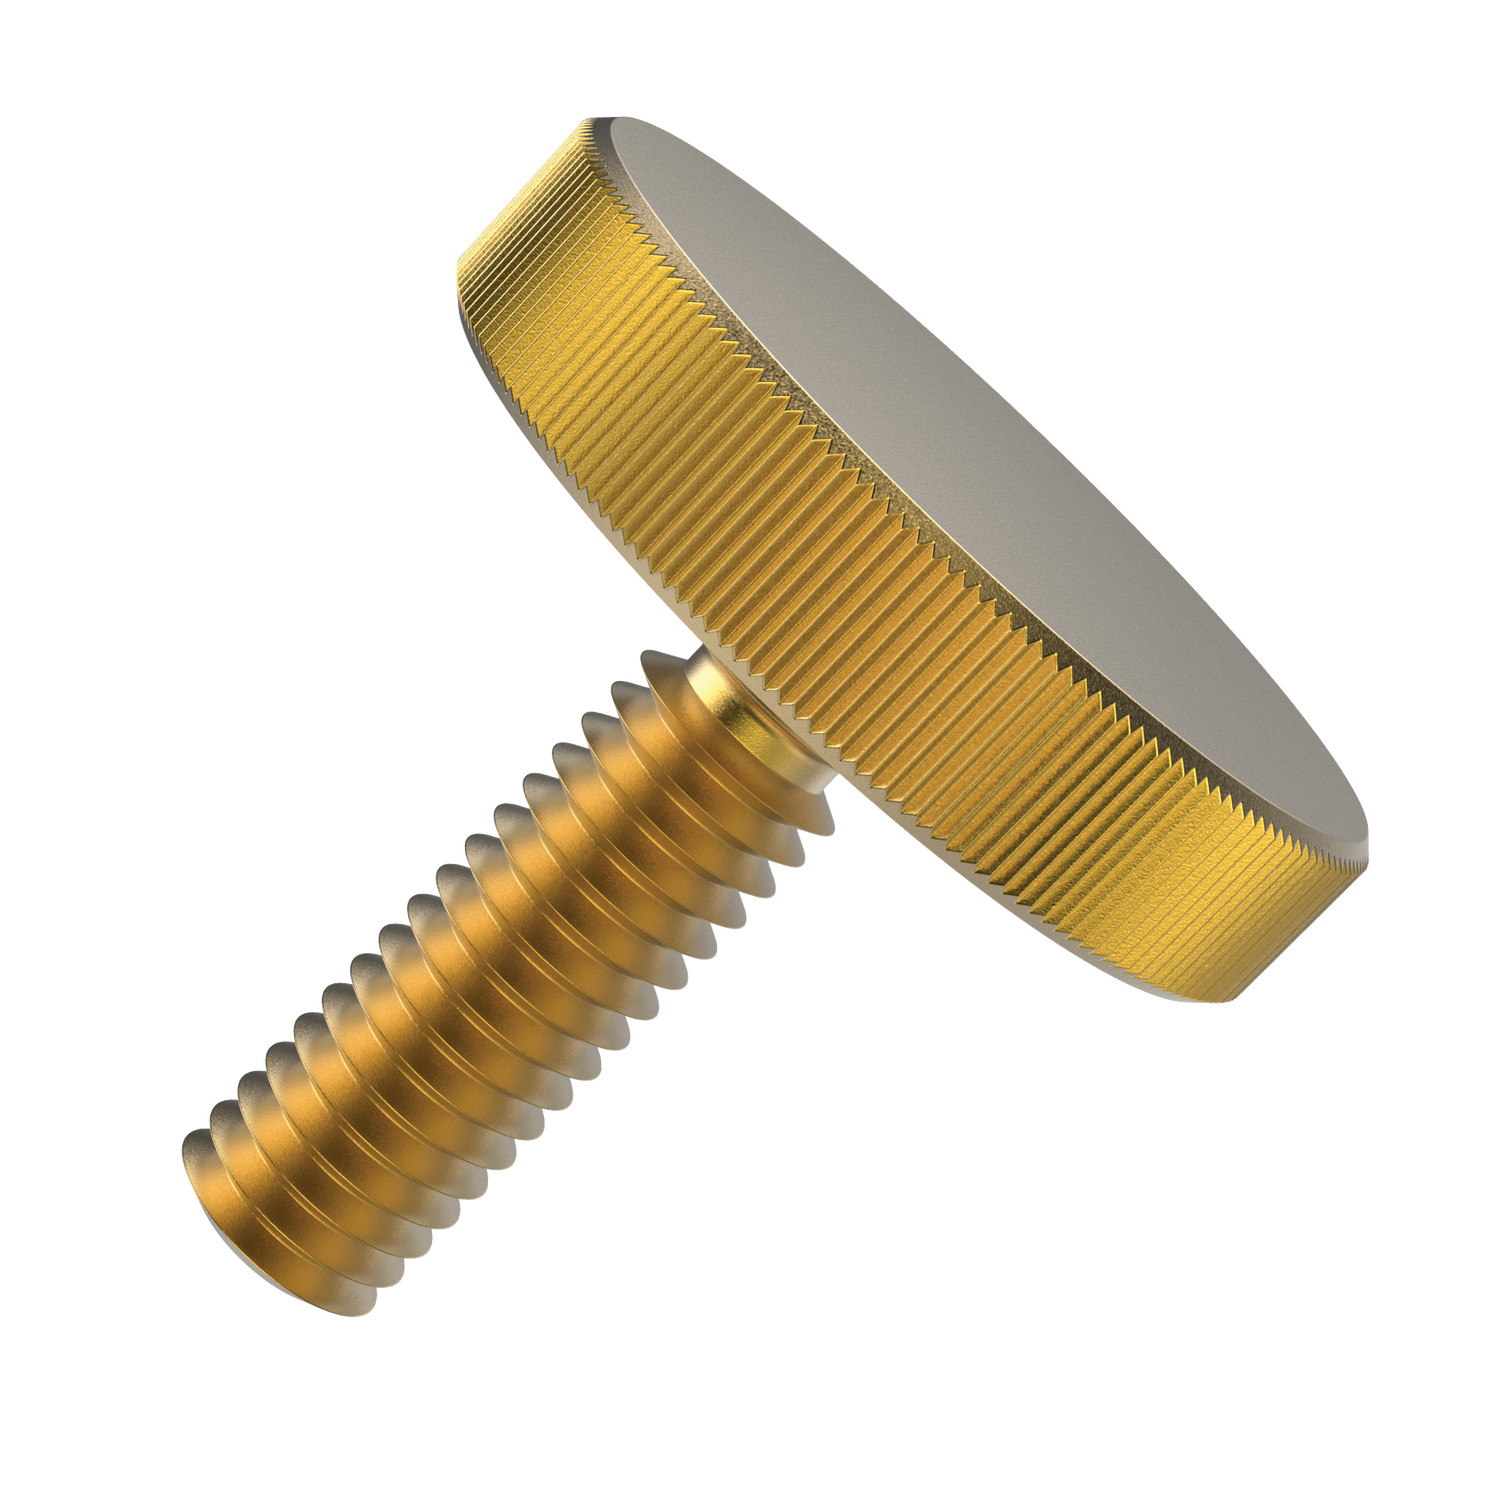 P0405.030-025-BR Knurled Thumb Screw M3x25 brass 